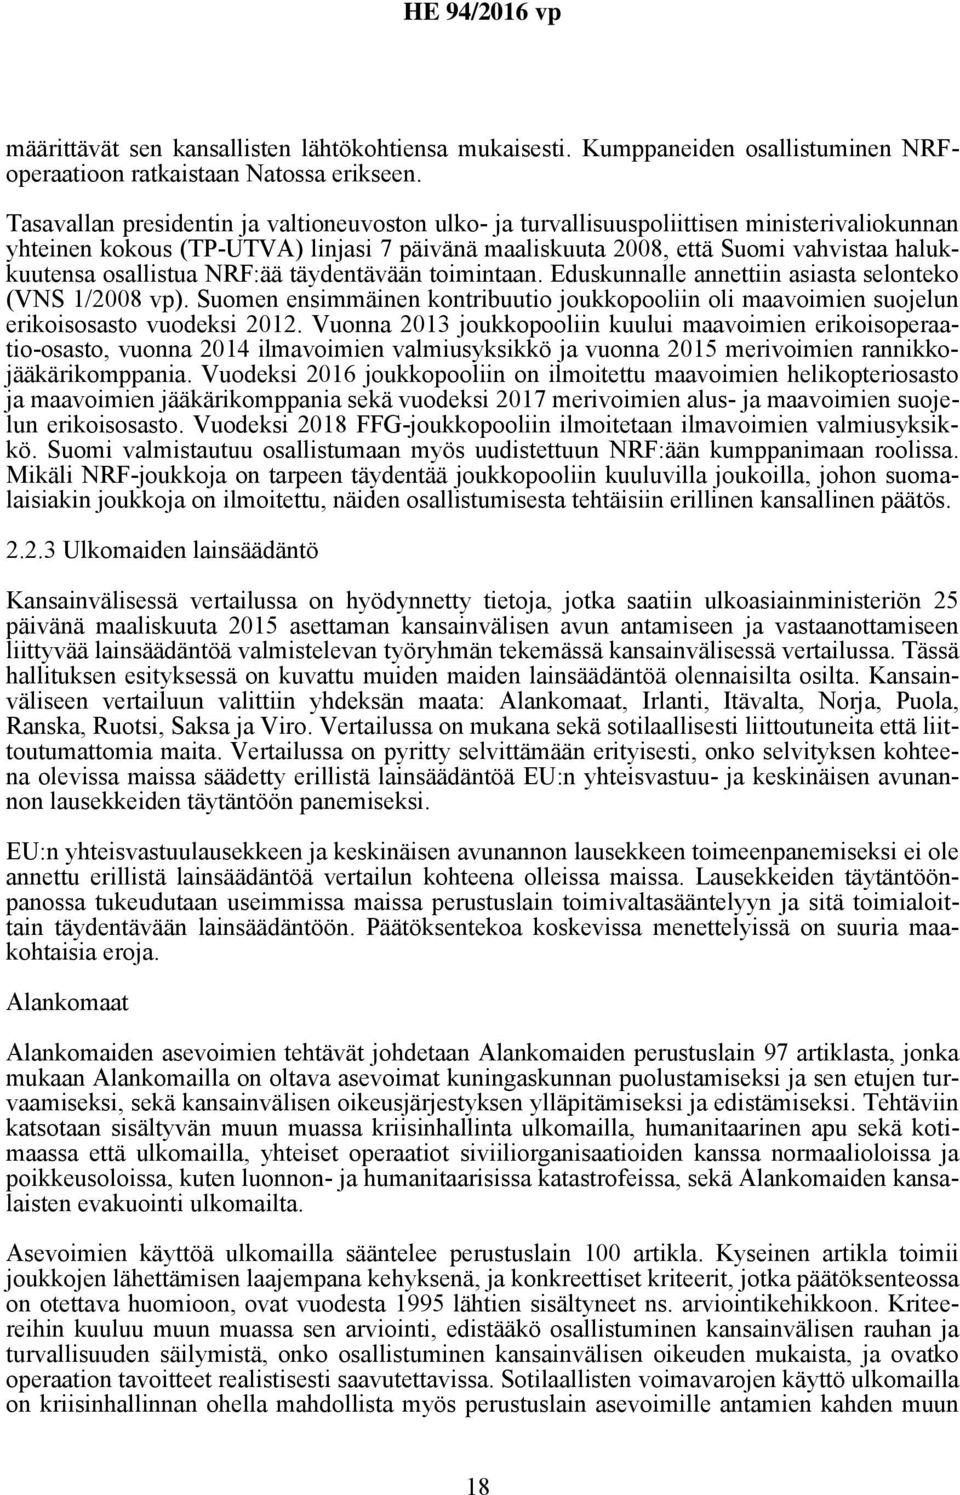 osallistua NRF:ää täydentävään toimintaan. Eduskunnalle annettiin asiasta selonteko (VNS 1/2008 vp). Suomen ensimmäinen kontribuutio joukkopooliin oli maavoimien suojelun erikoisosasto vuodeksi 2012.